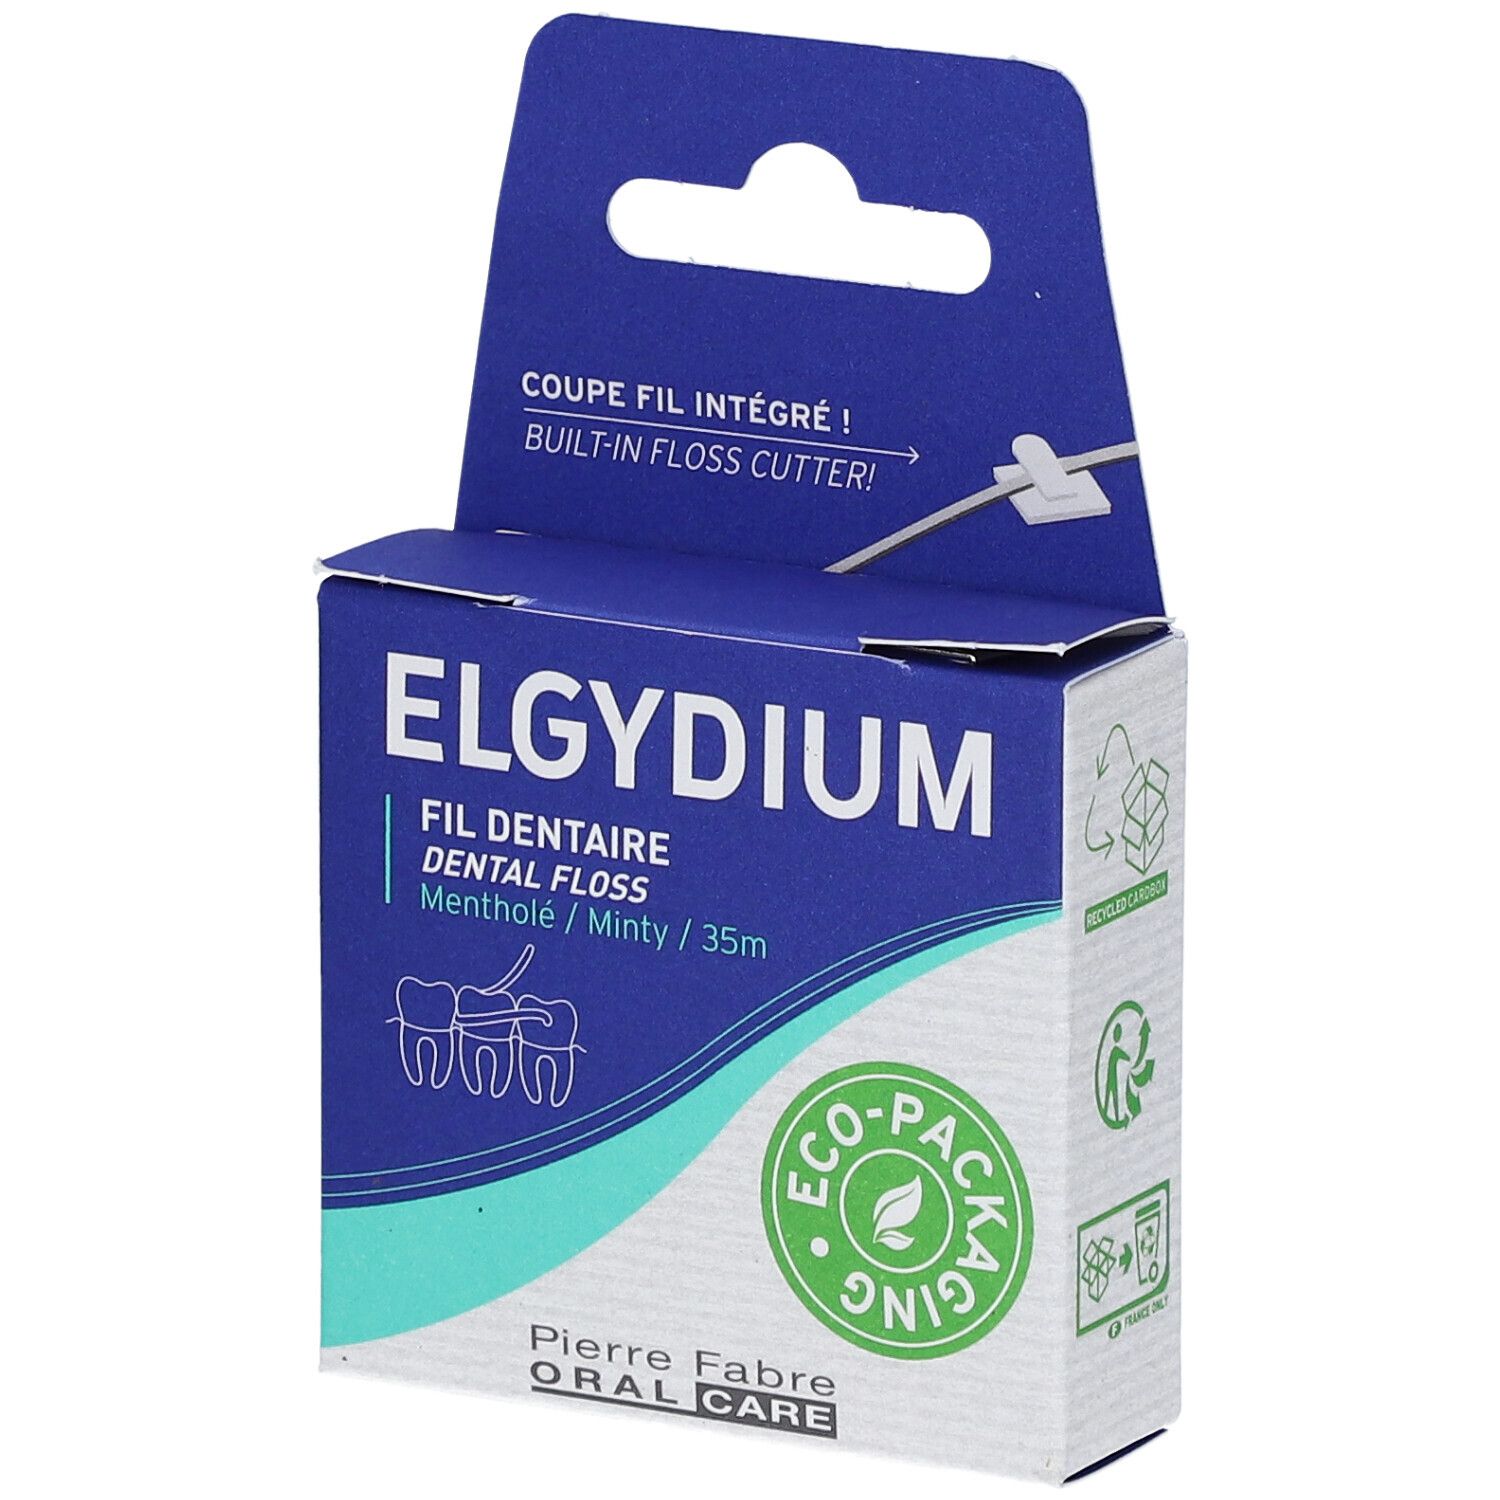 Elgydium Fil dentaire Éco-responsable 35m